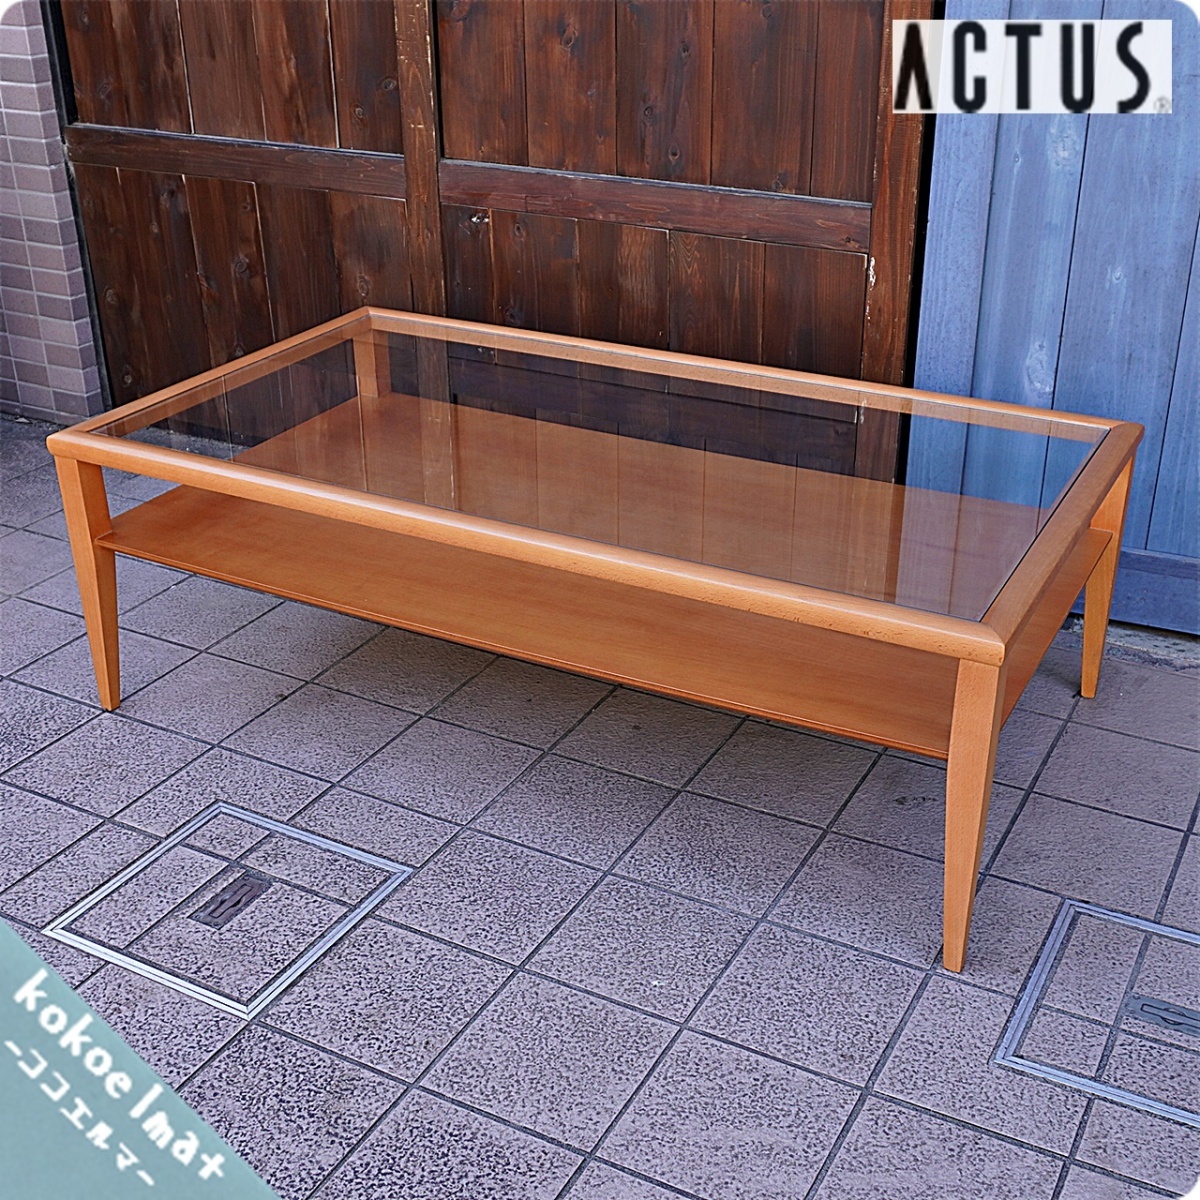 ACTUS アクタス ビーチ材 ガラス リビングテーブル コーヒーテーブル